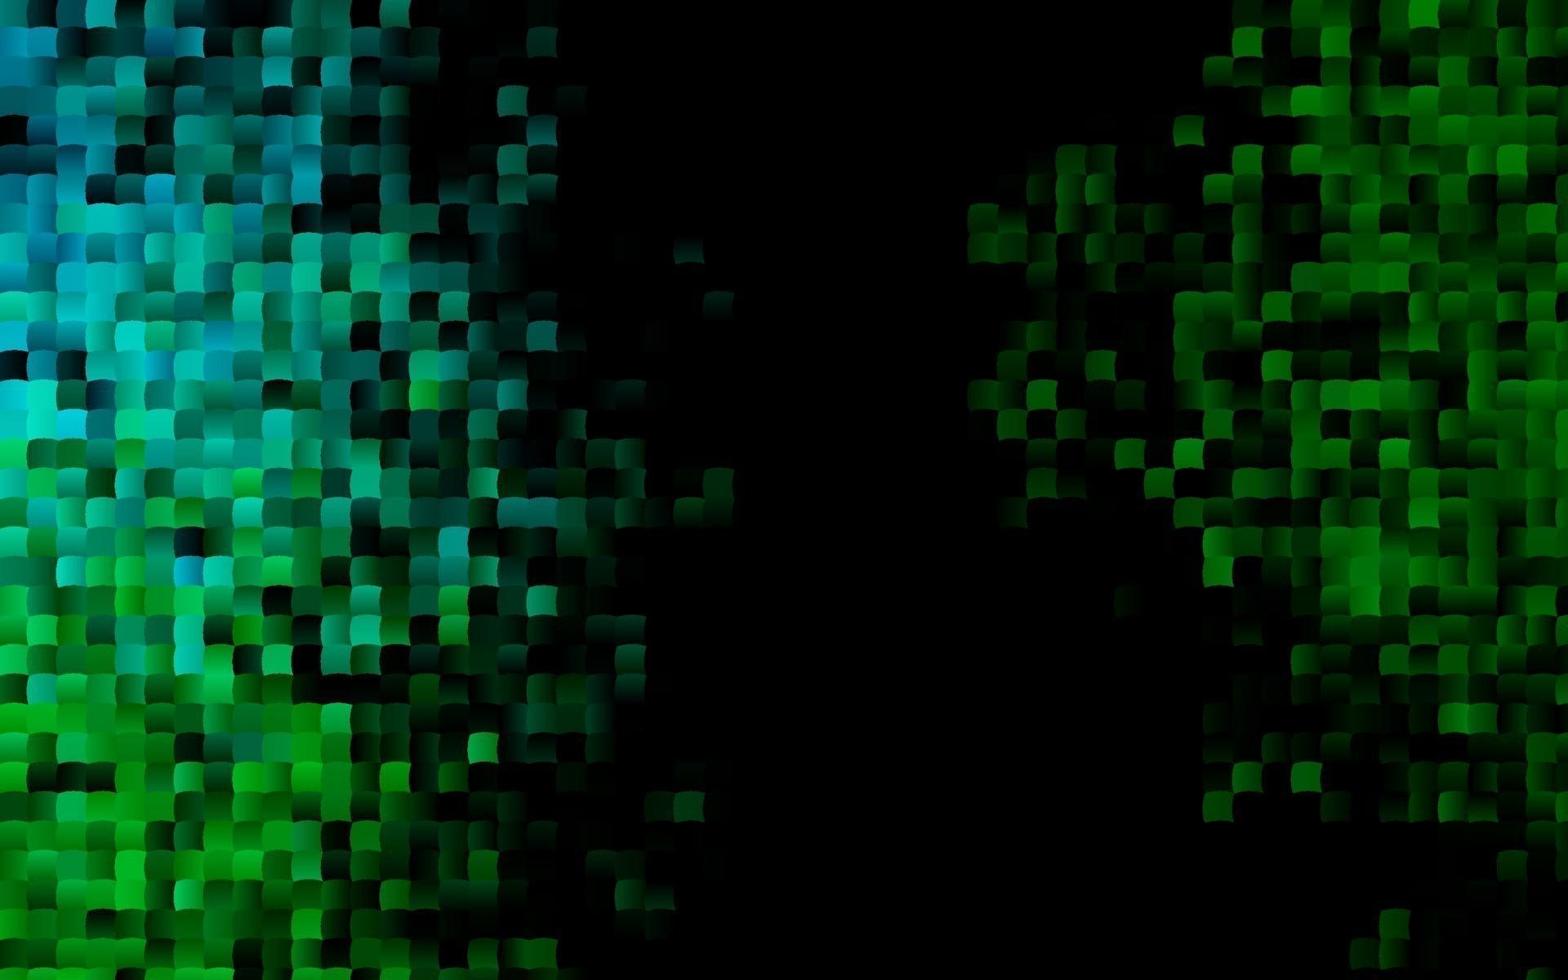 mörkblå, grön vektormall med kristaller, rektanglar. vektor